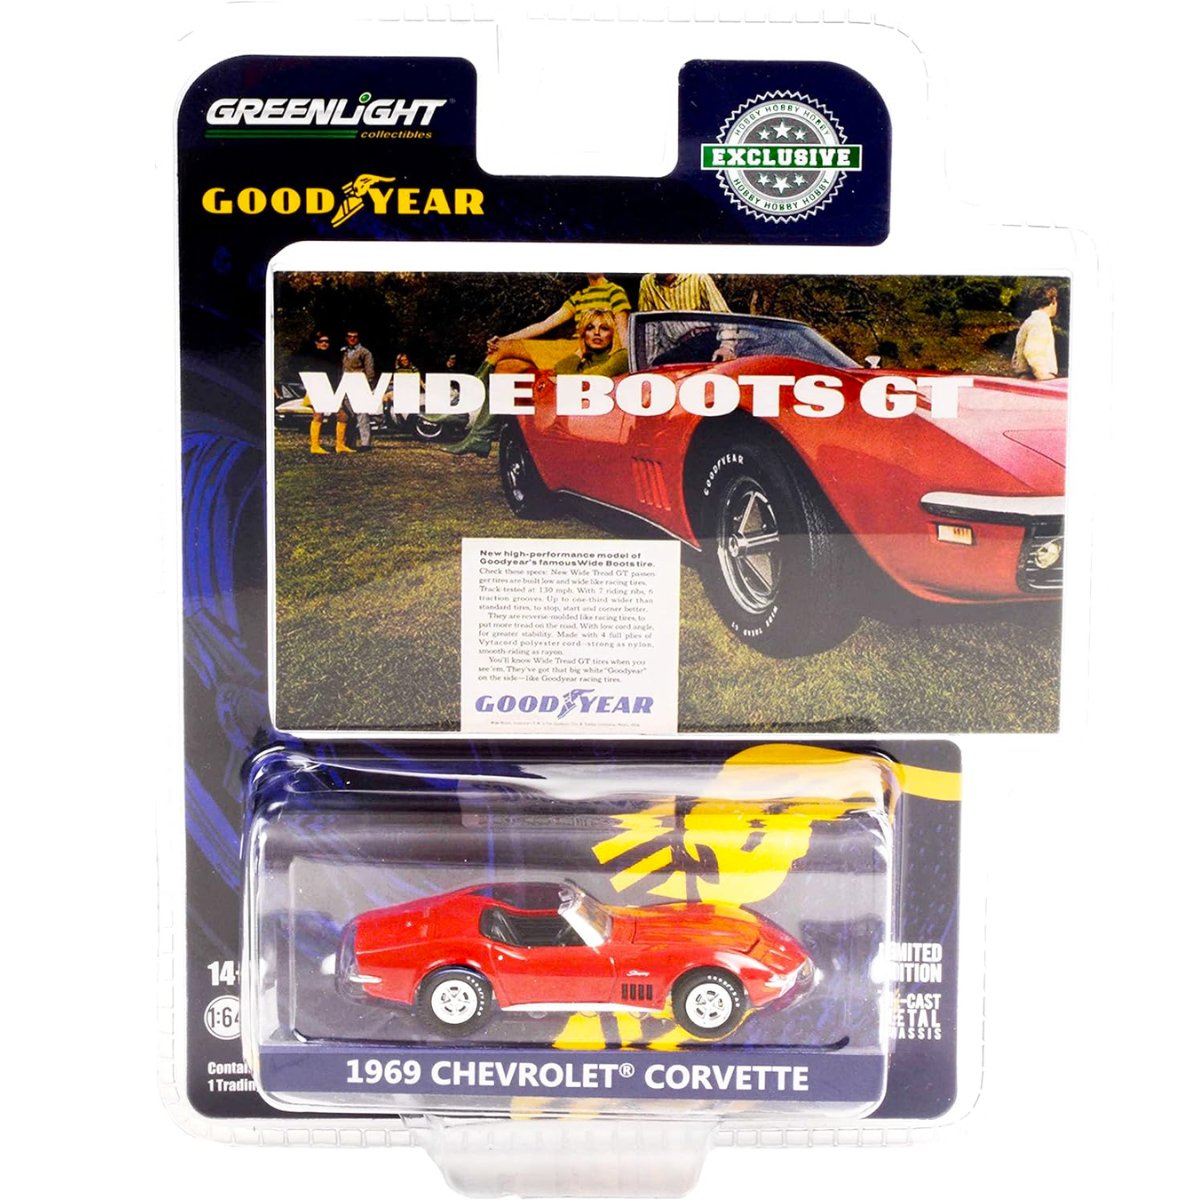 Greenlight 1969 Chevrolet Corvette - 1:64 Scale - Phillips Hobbies